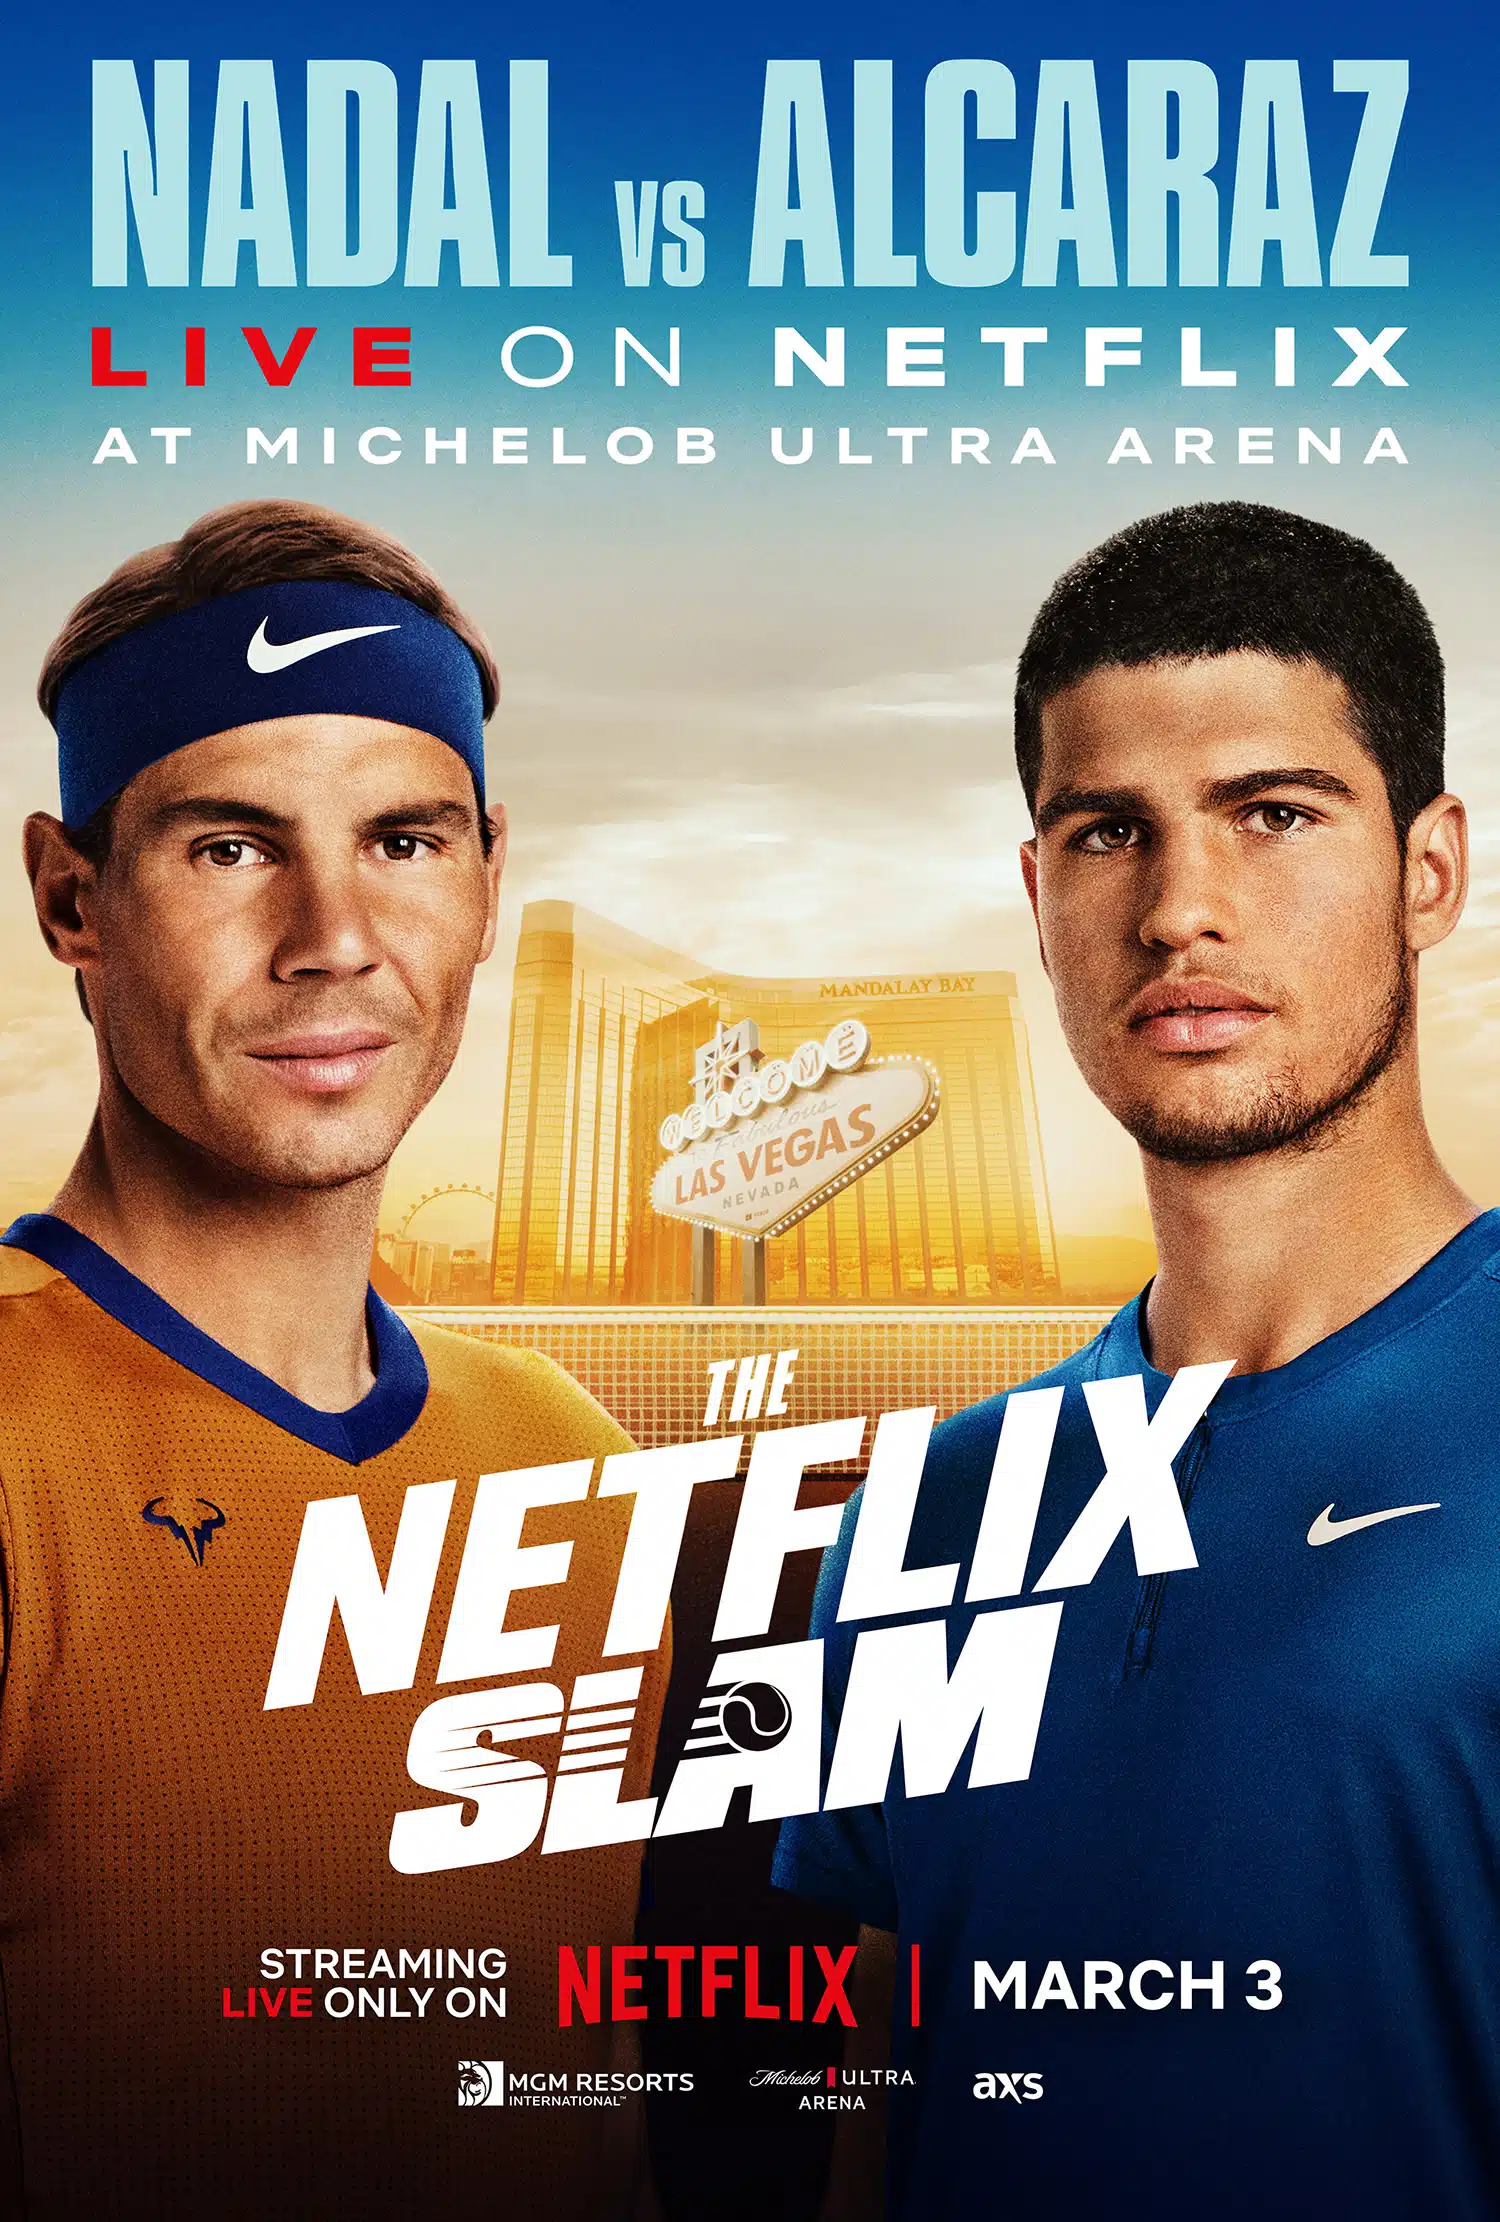 The netflix slam, le tournoi de tennis de Netflix